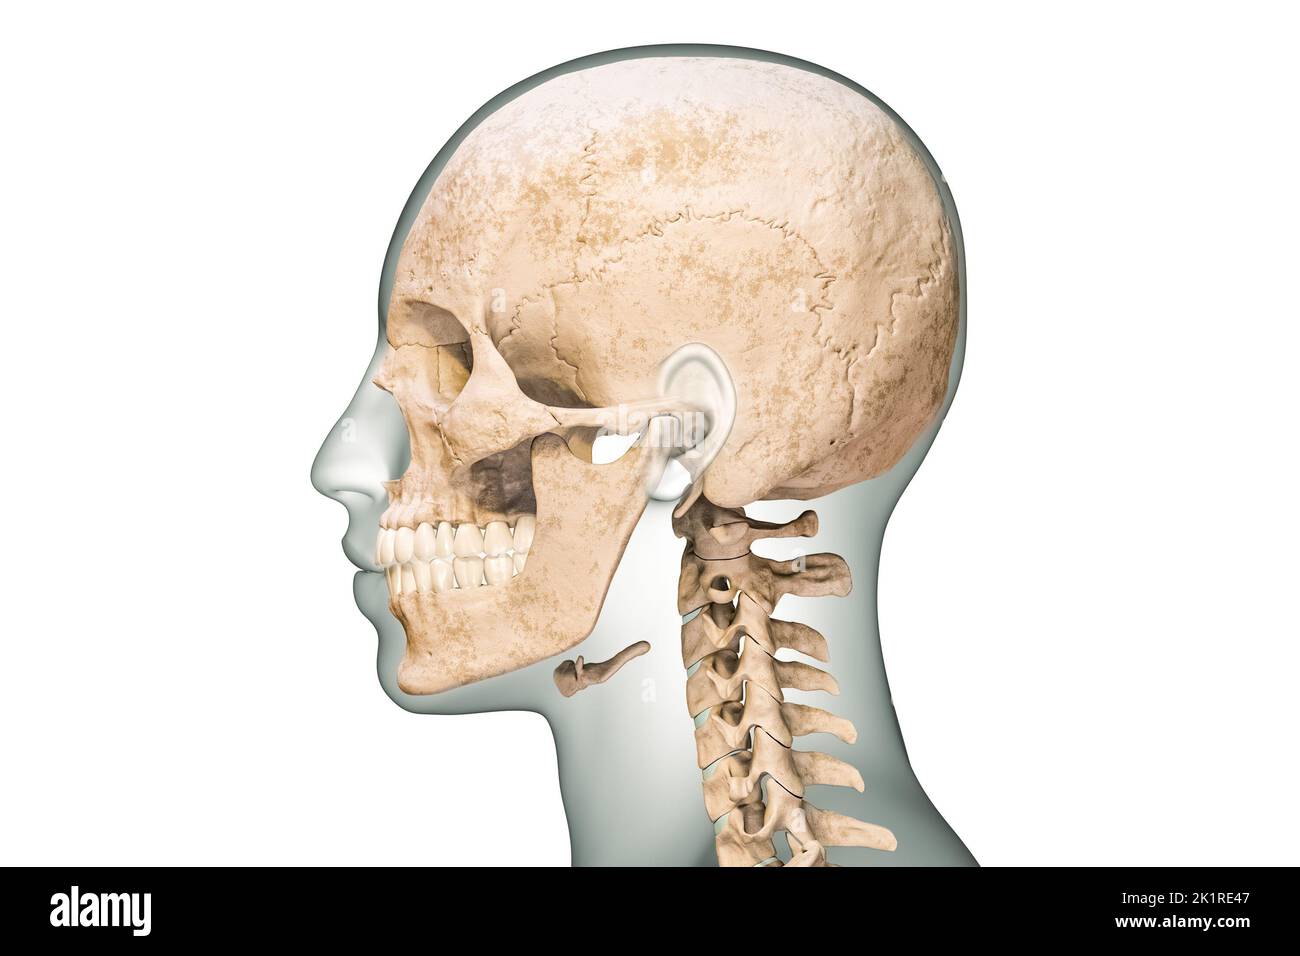 Vista lateral o de perfil de los huesos humanos del cráneo con vértebras cervicales y contornos del cuerpo 3D que muestra la ilustración aislada sobre fondo blanco. Anatomía Foto de stock